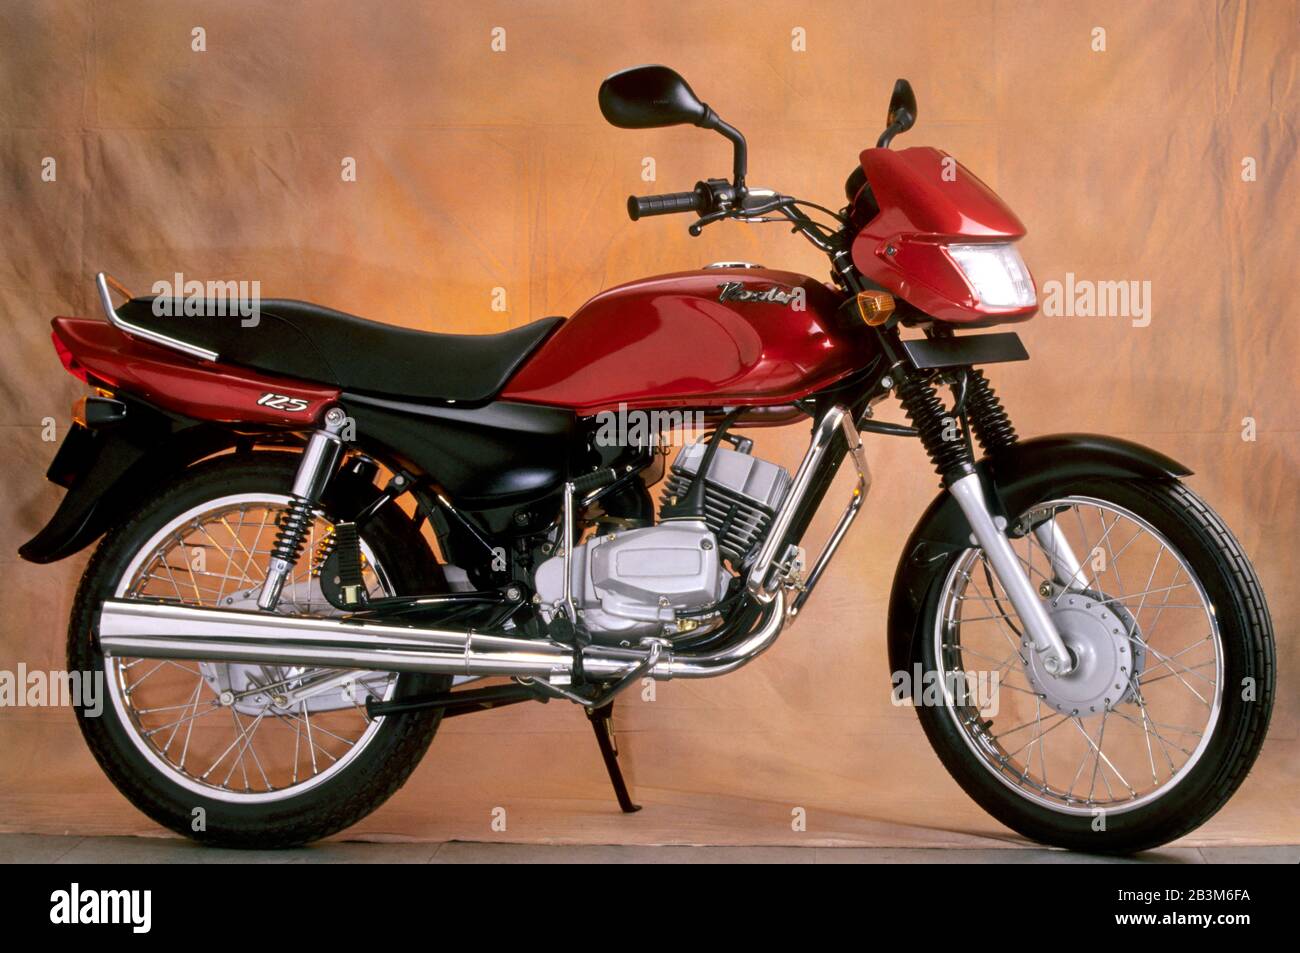 bajaj bike 125 prowler , India, Asia Stock Photo